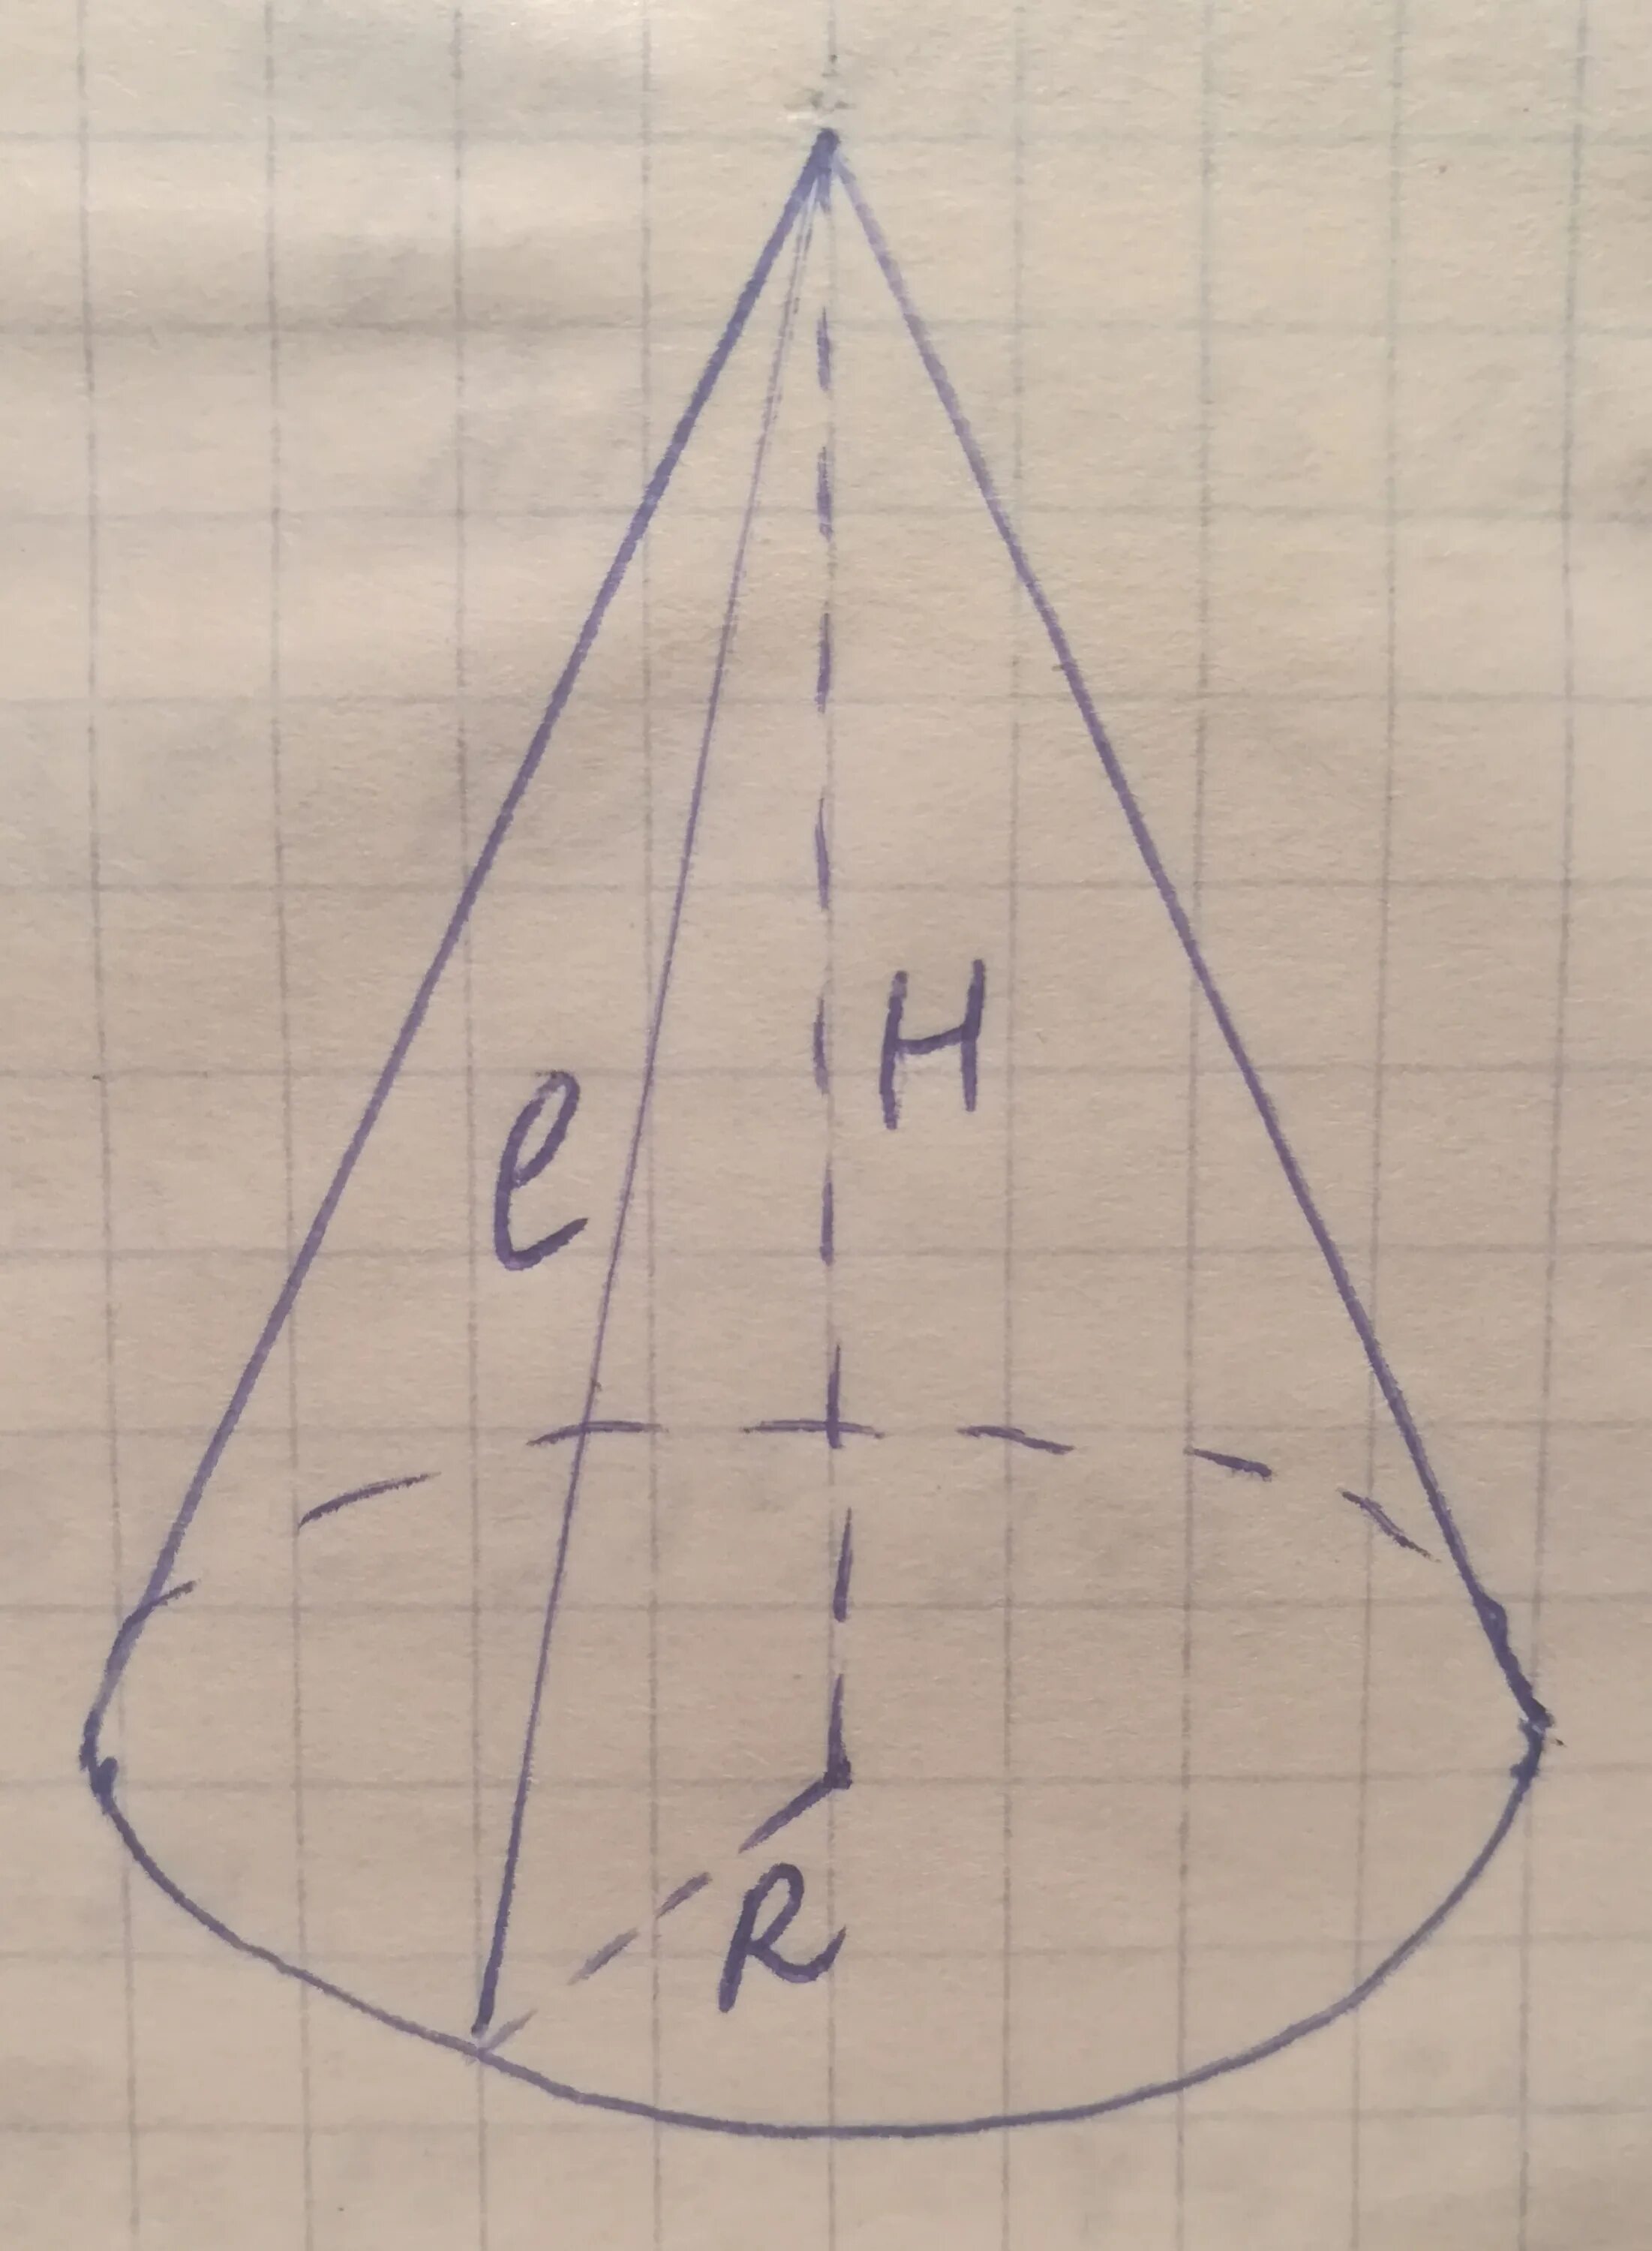 Объем конуса равен 16 п. Образующая конуса. Окружность основания конуса. Объемный конус. Прямоугольный треугольник в конусе.